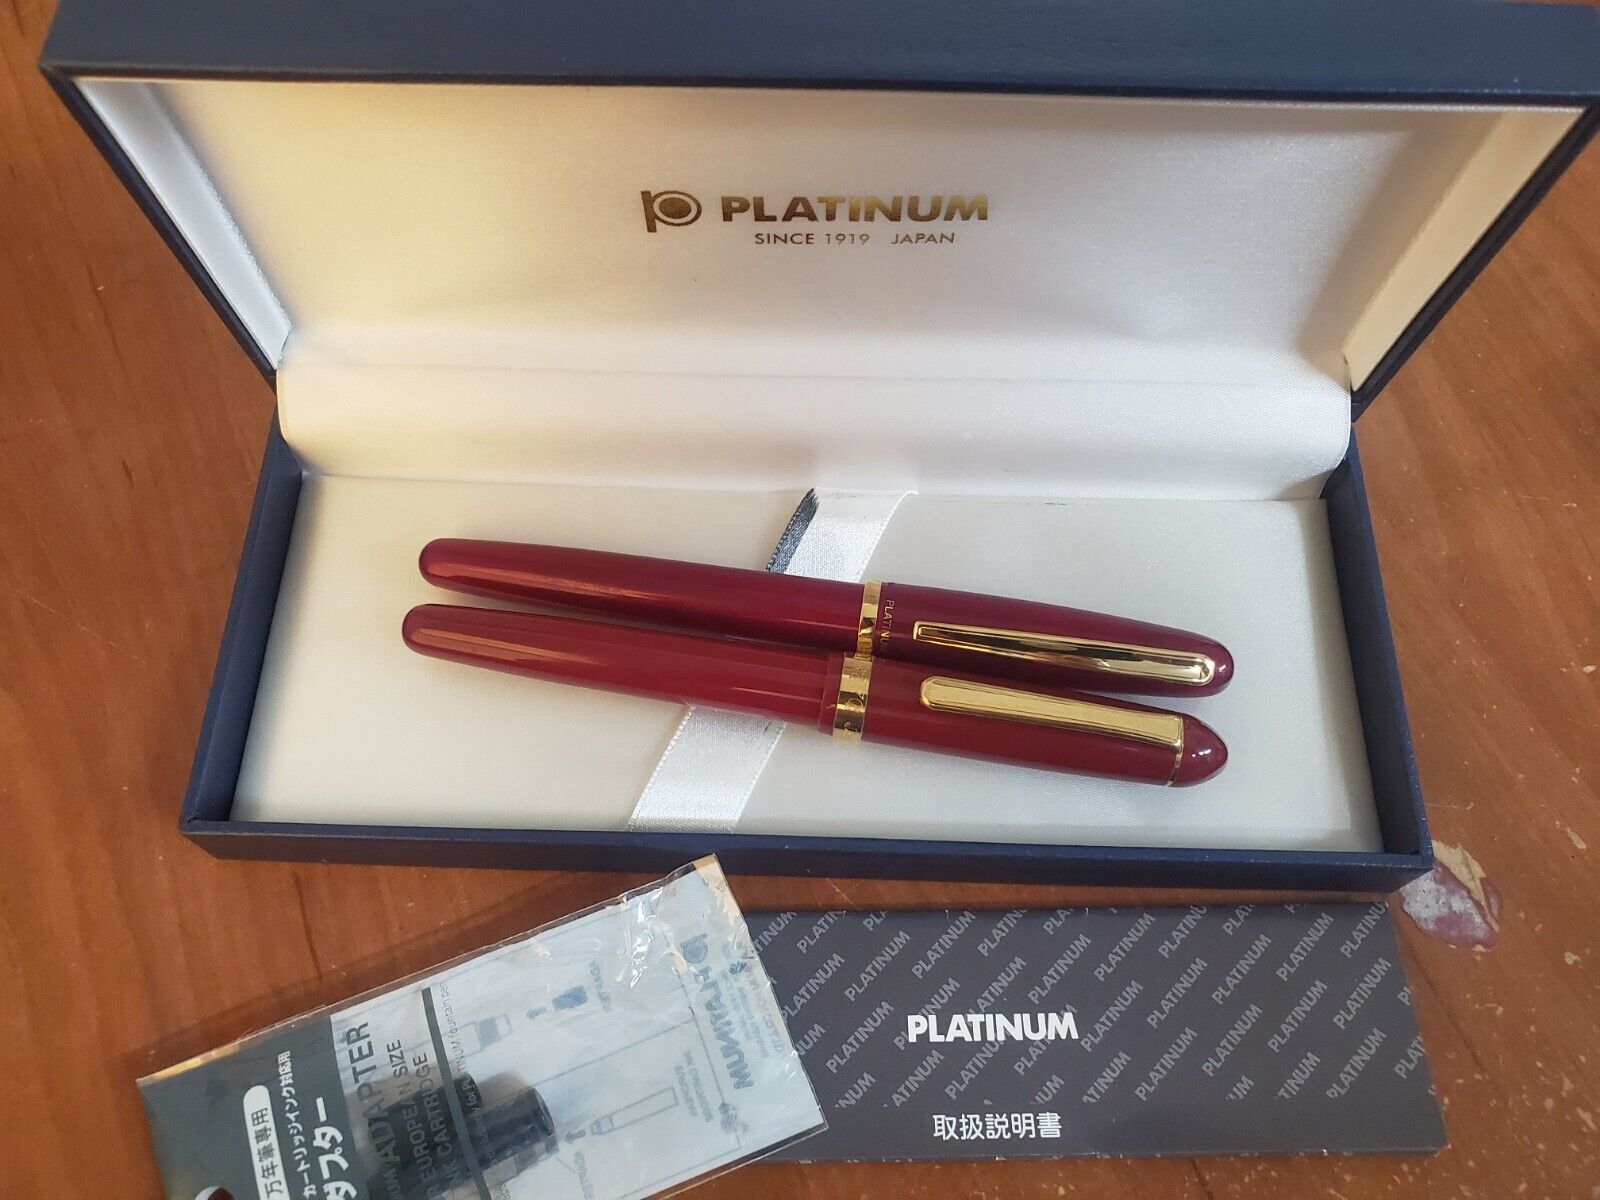 Platinum 3776 Red Fountain pen